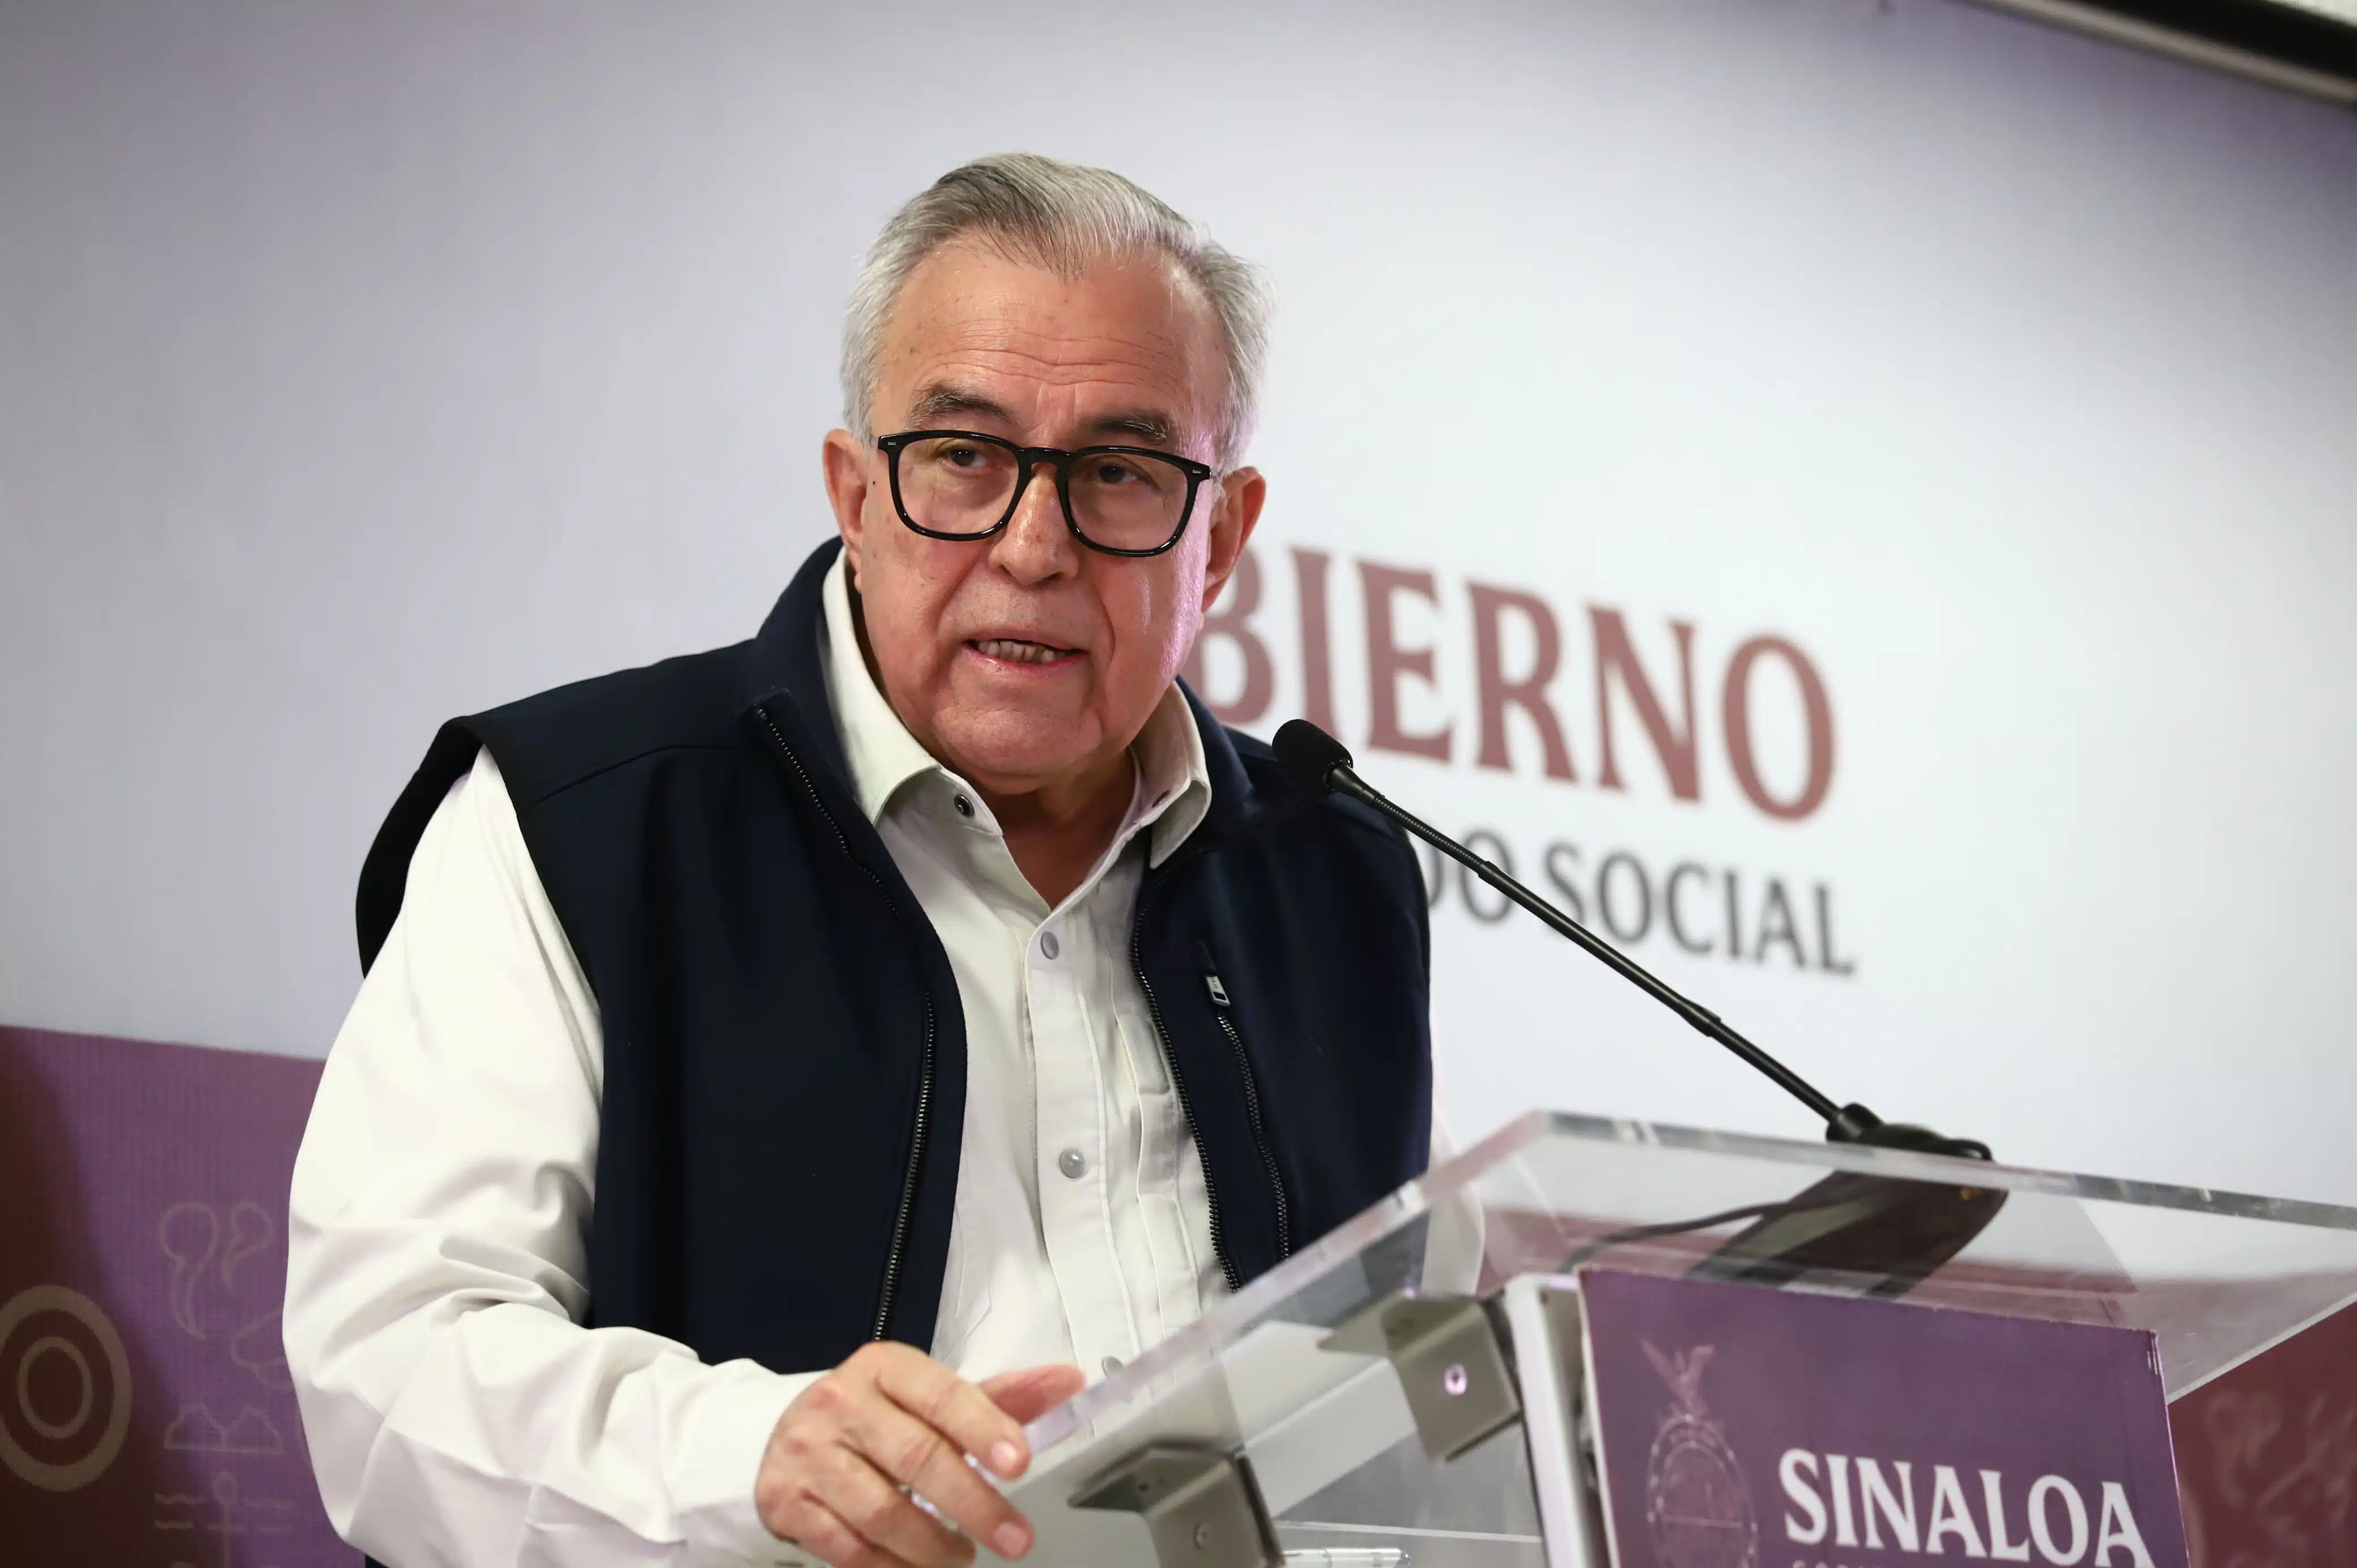 Gobernador de Sinaloa, Rubén Rocha Moya